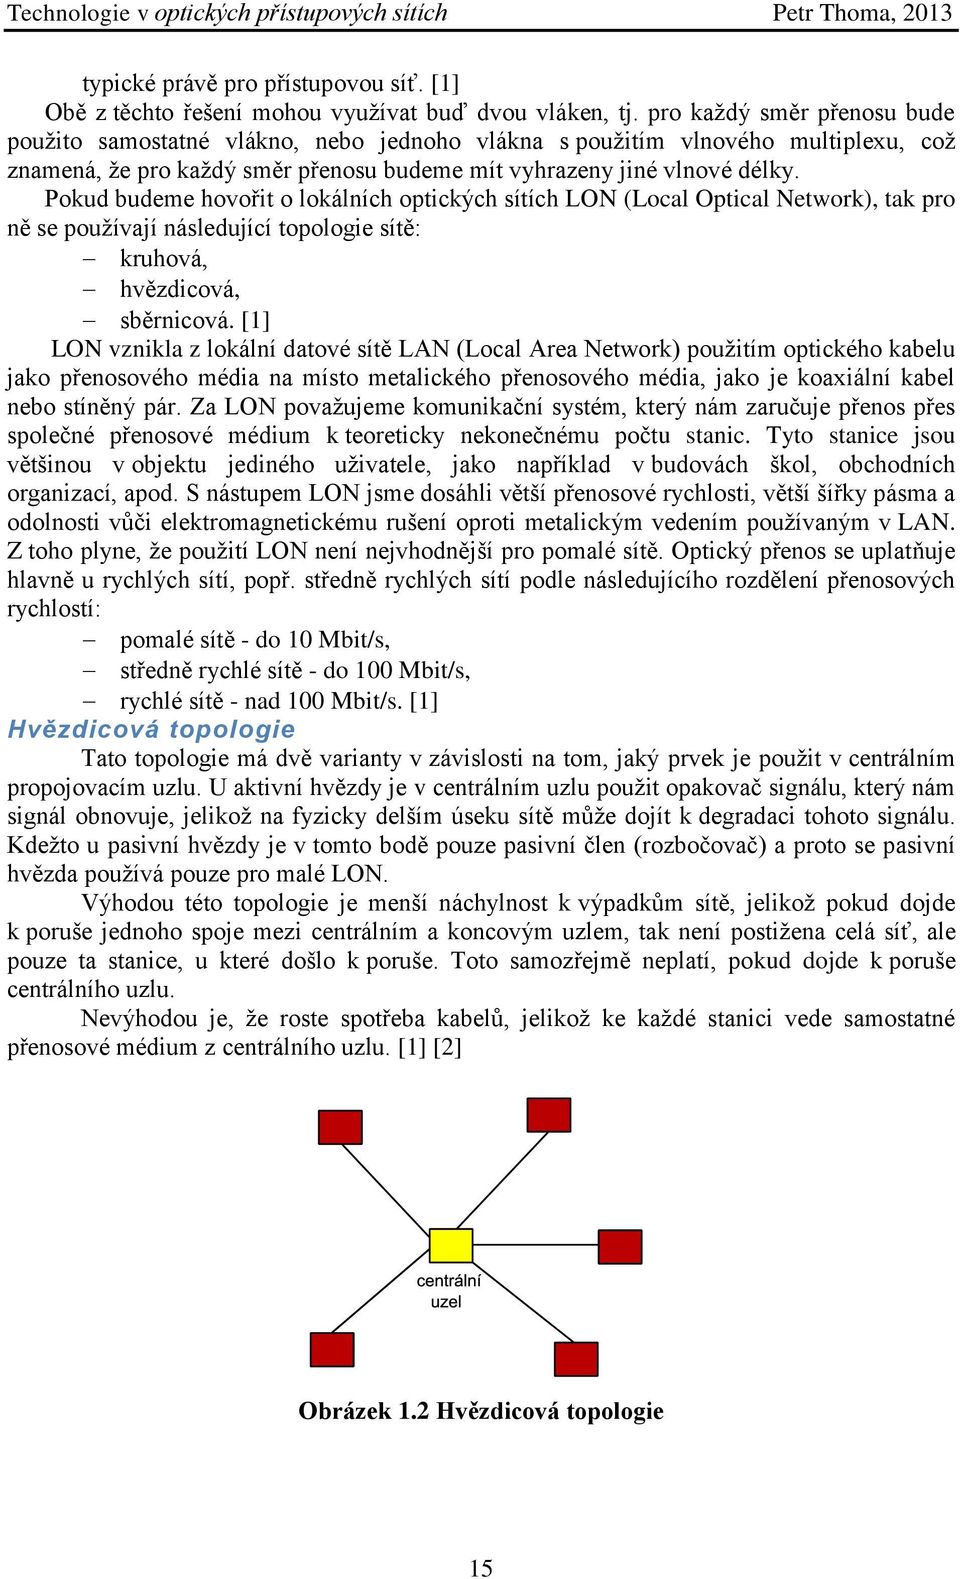 Pokud budeme hovořit o lokálních optických sítích LON (Local Optical Network), tak pro ně se používají následující topologie sítě: kruhová, hvězdicová, sběrnicová.